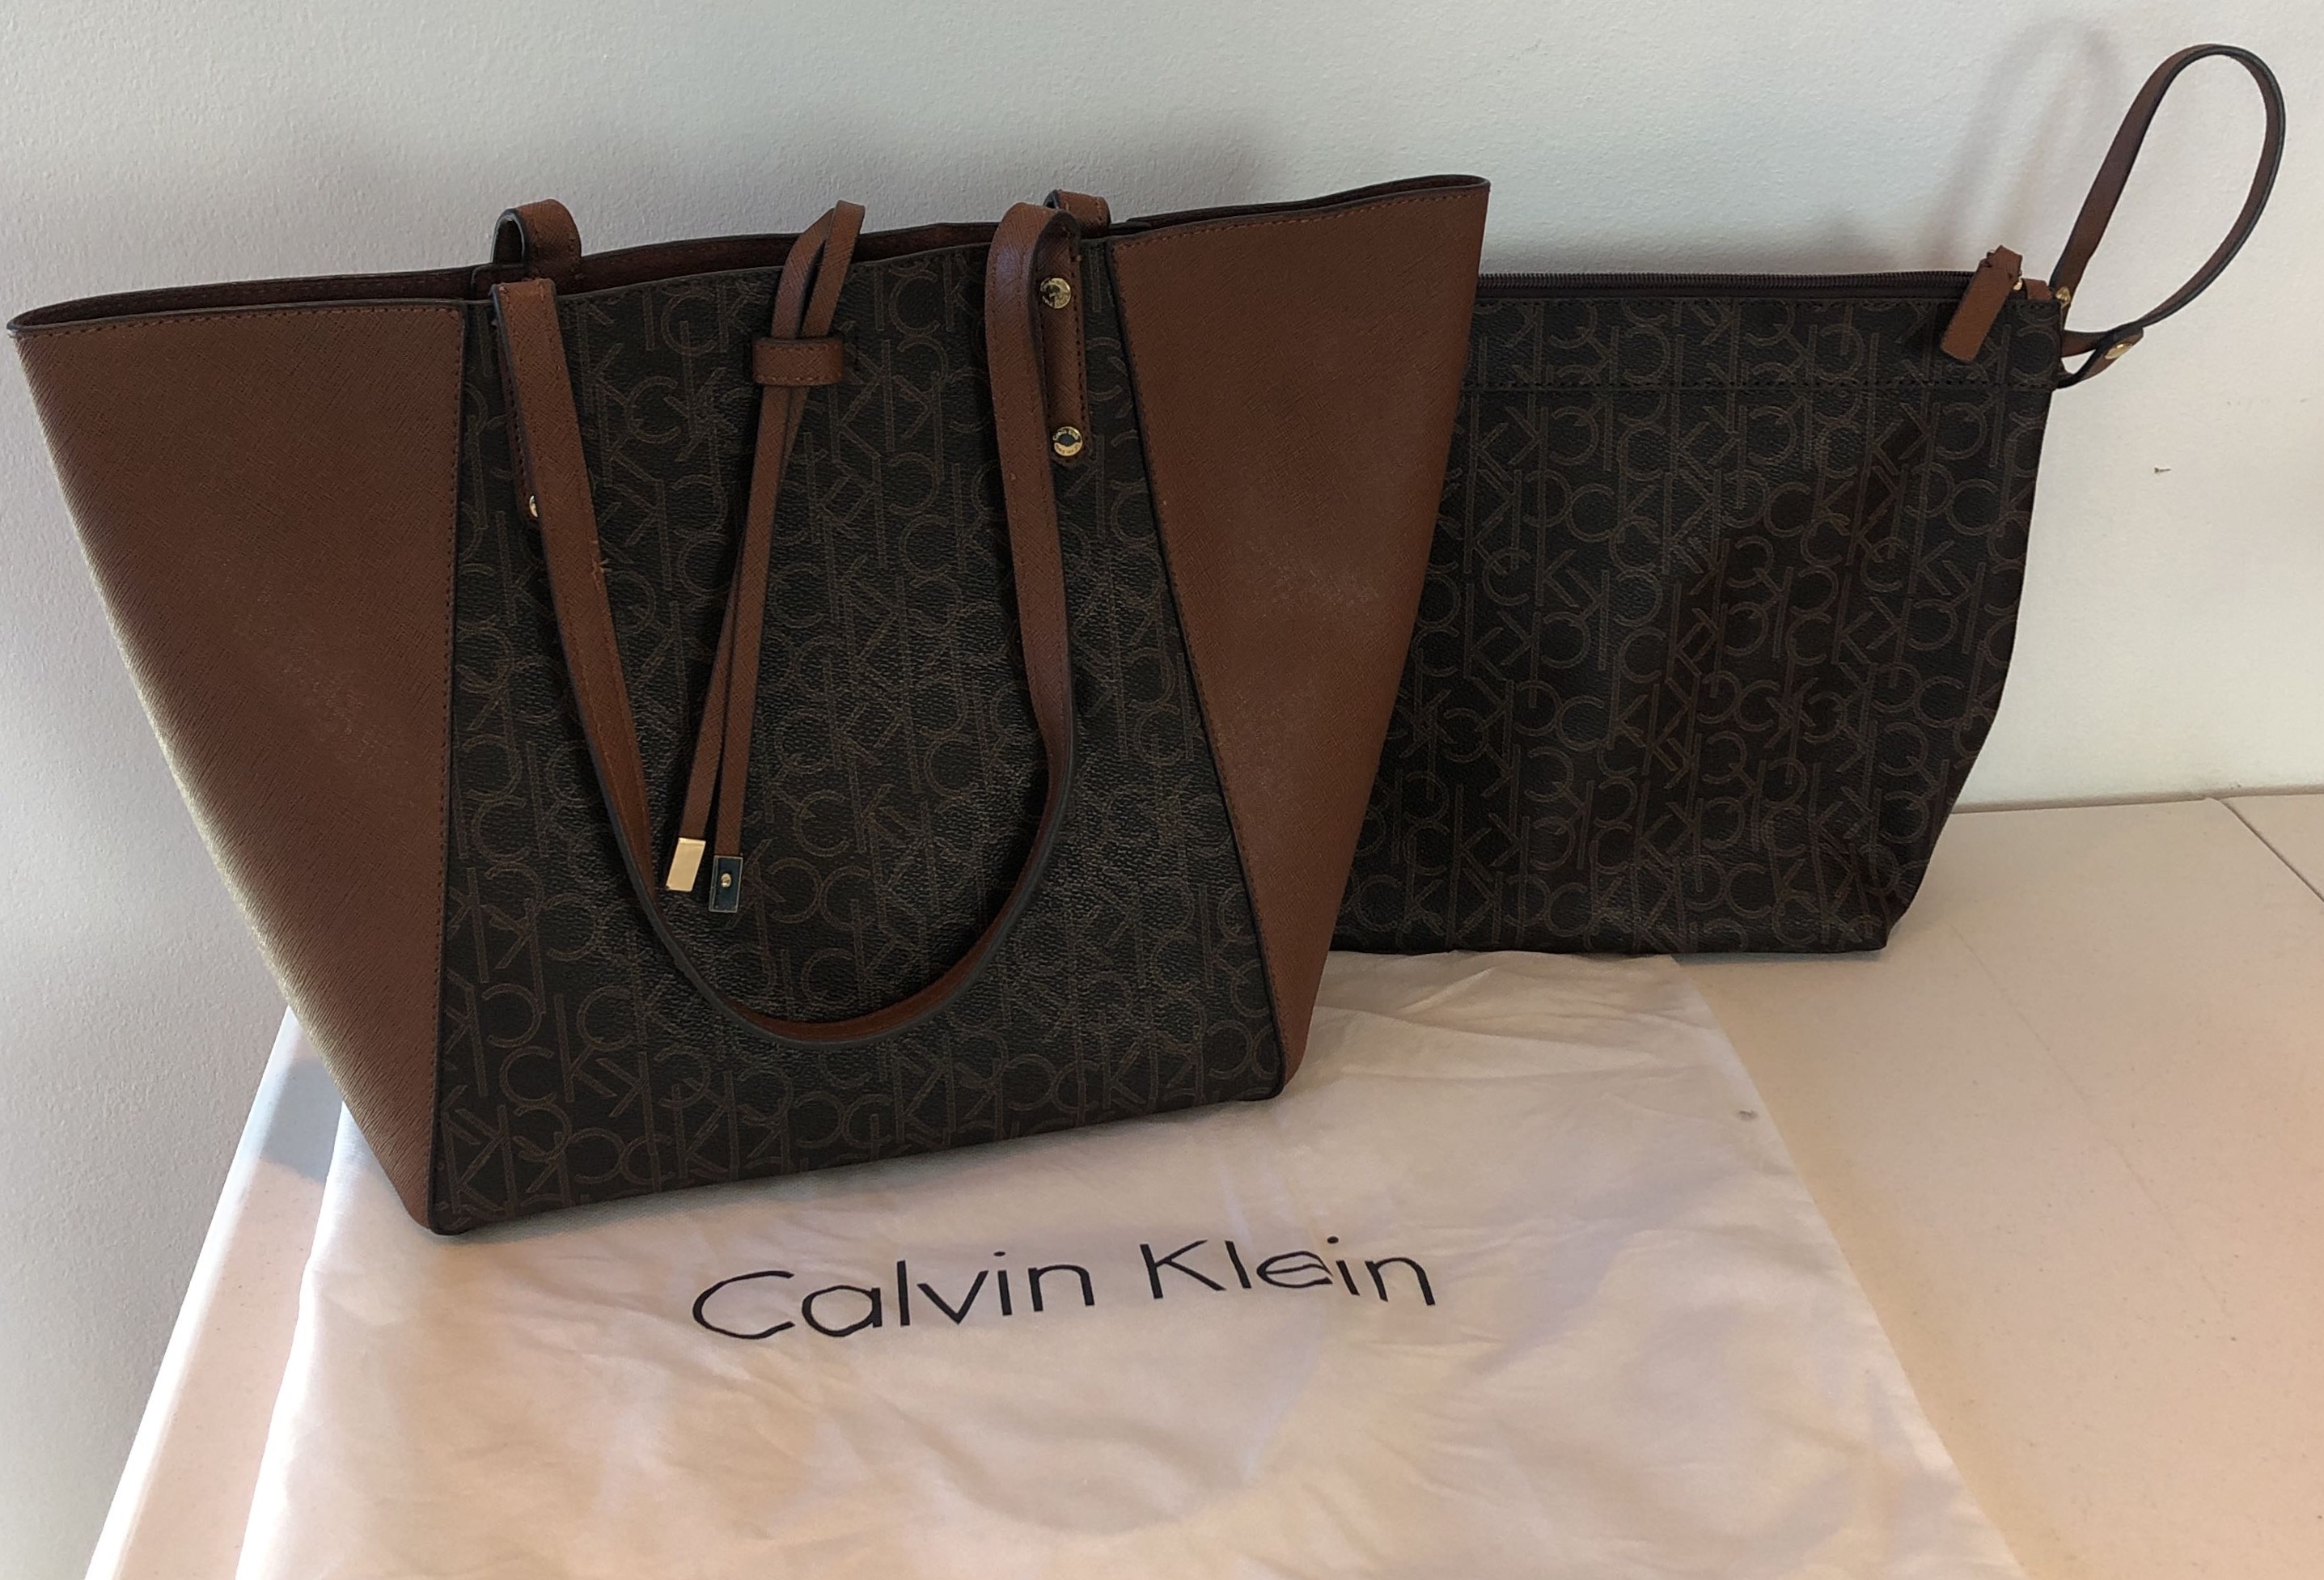 CALVIN KLEIN Beige Crossbody Bag, Designer Medium Tan Faux Leather Travel  Convenient Signature Travel Convenient Shoulder Bag/gift Idea/n204 - Etsy